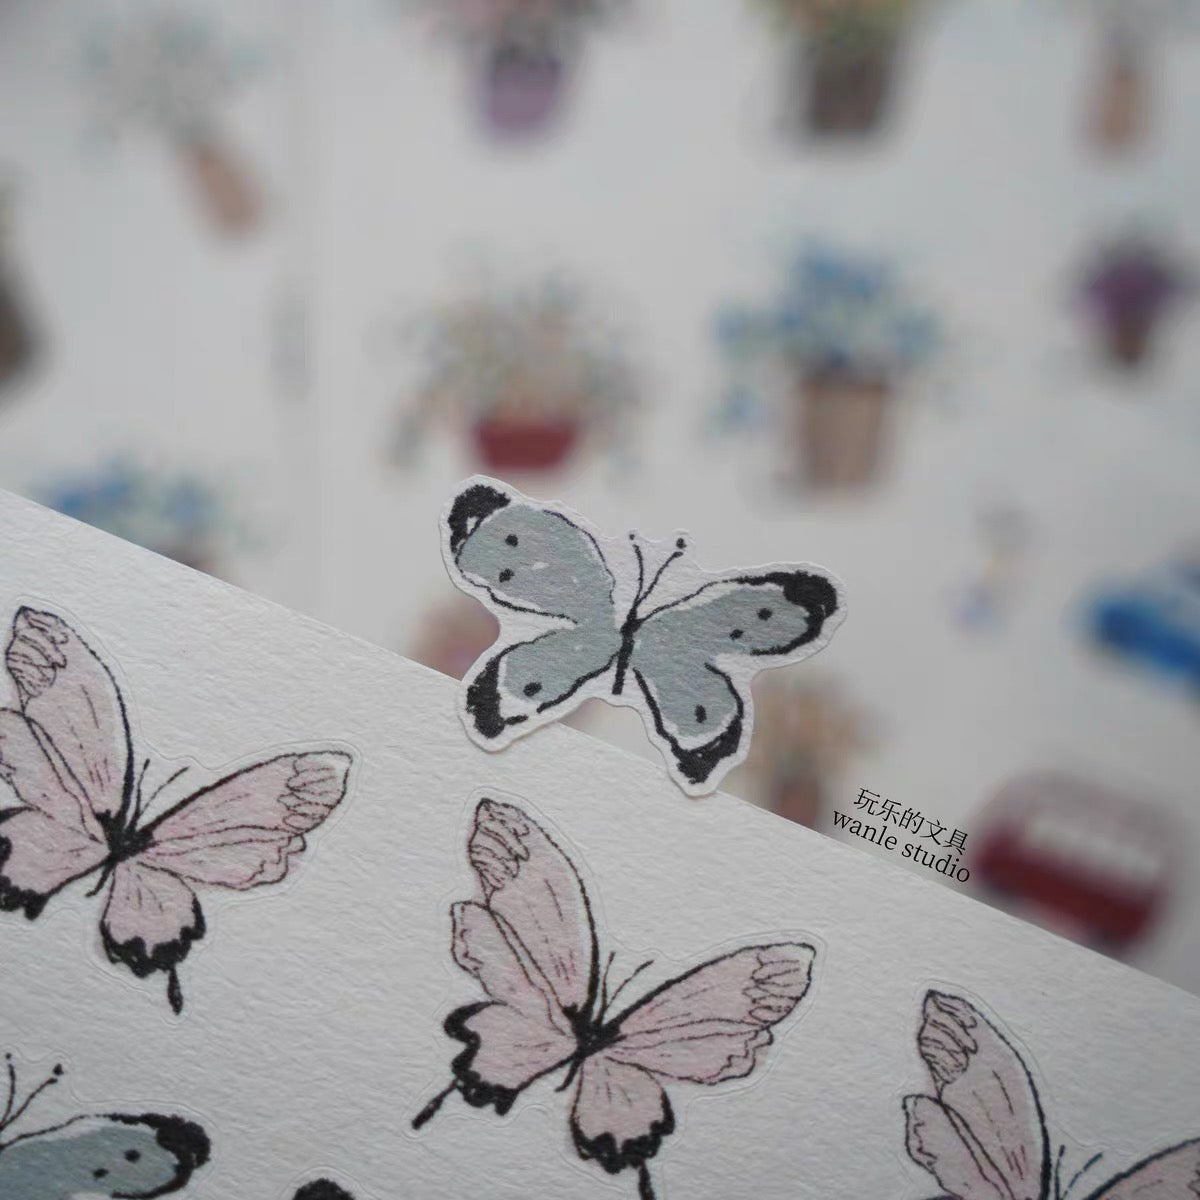 NEW Wongyuanle Vol.6 - Butterfly | Die Cut | 2 Sheets Sticker